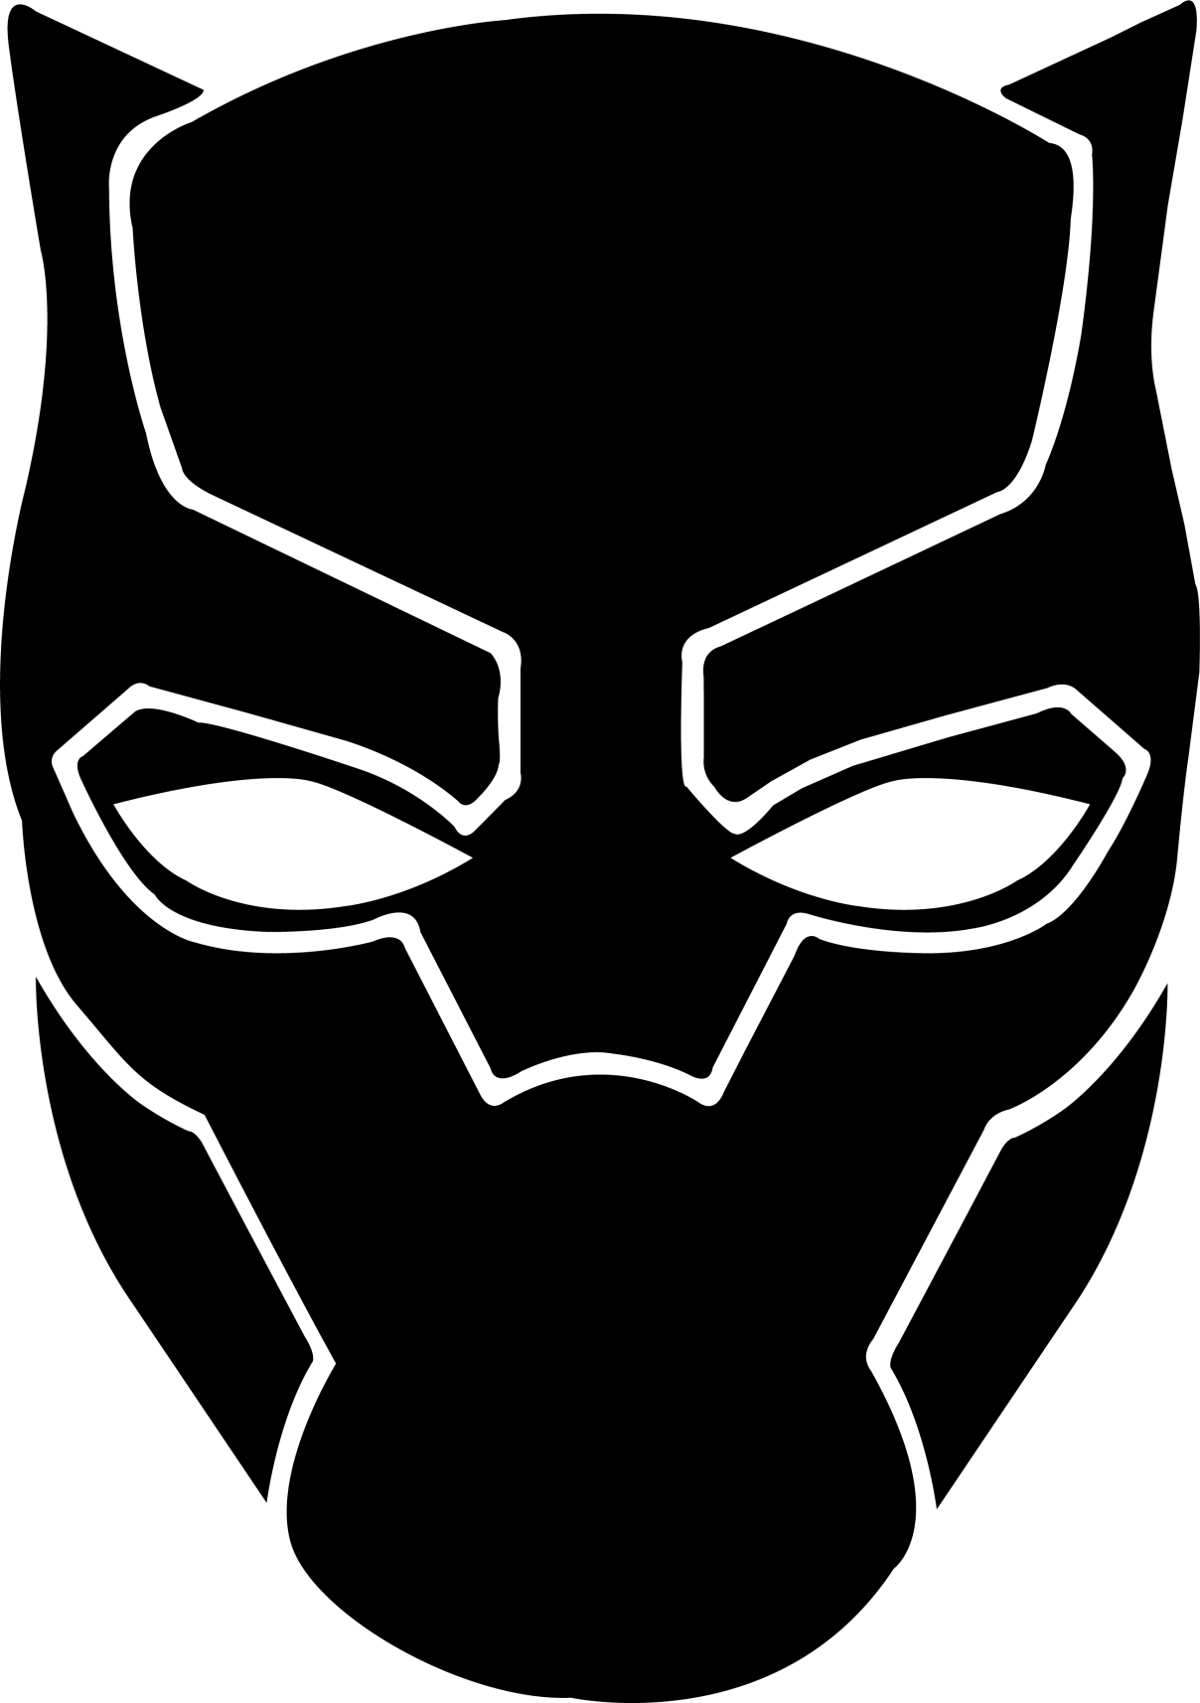 โลโก้ Panther สีดำพื้นหลังรูปภาพ PNG